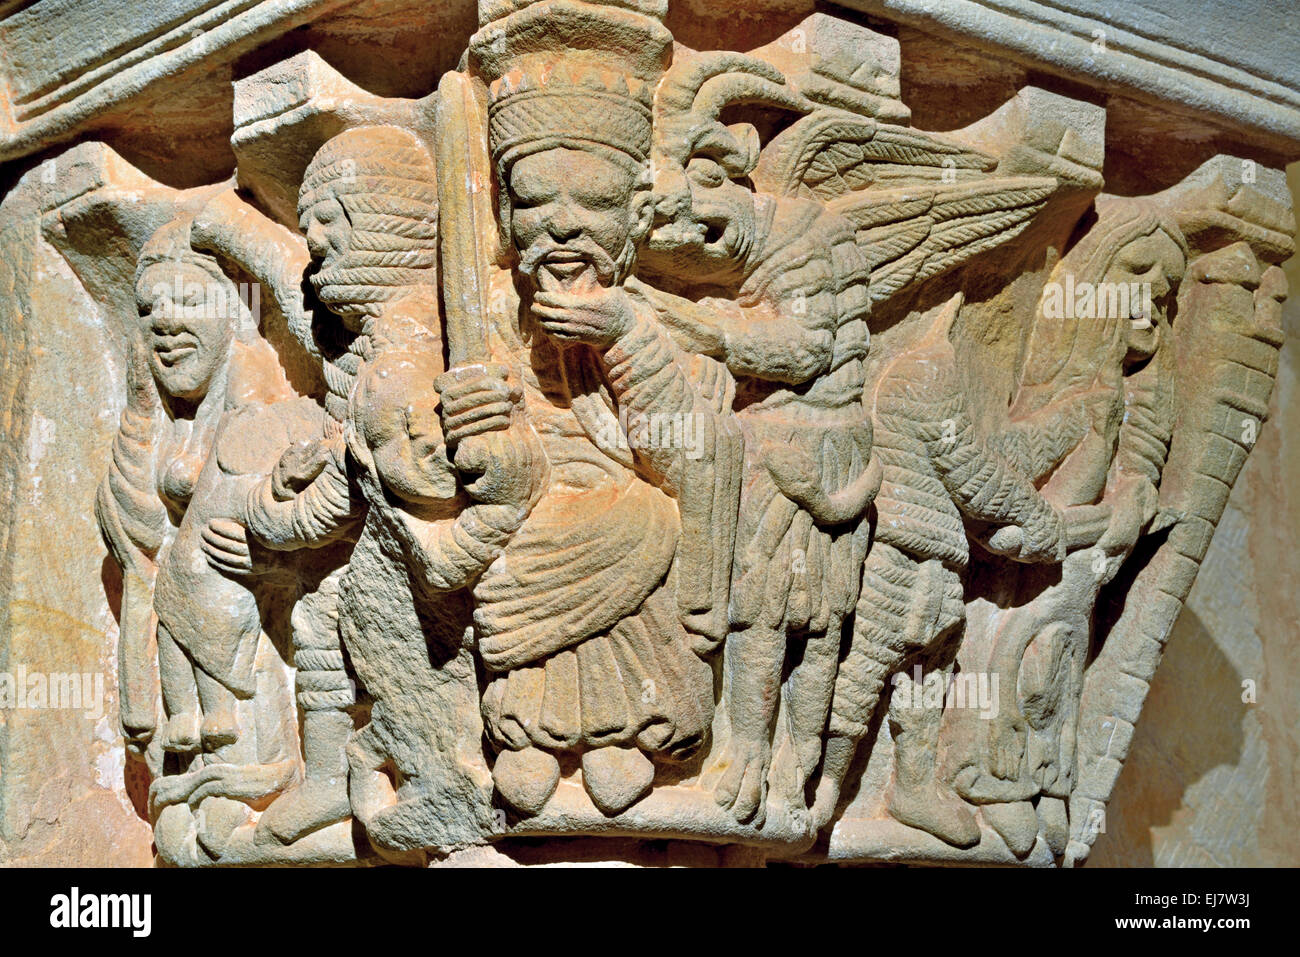 Spagna, Soria: Dettaglio di un capitello romanico nel monastero di San Juan de Duero Foto Stock